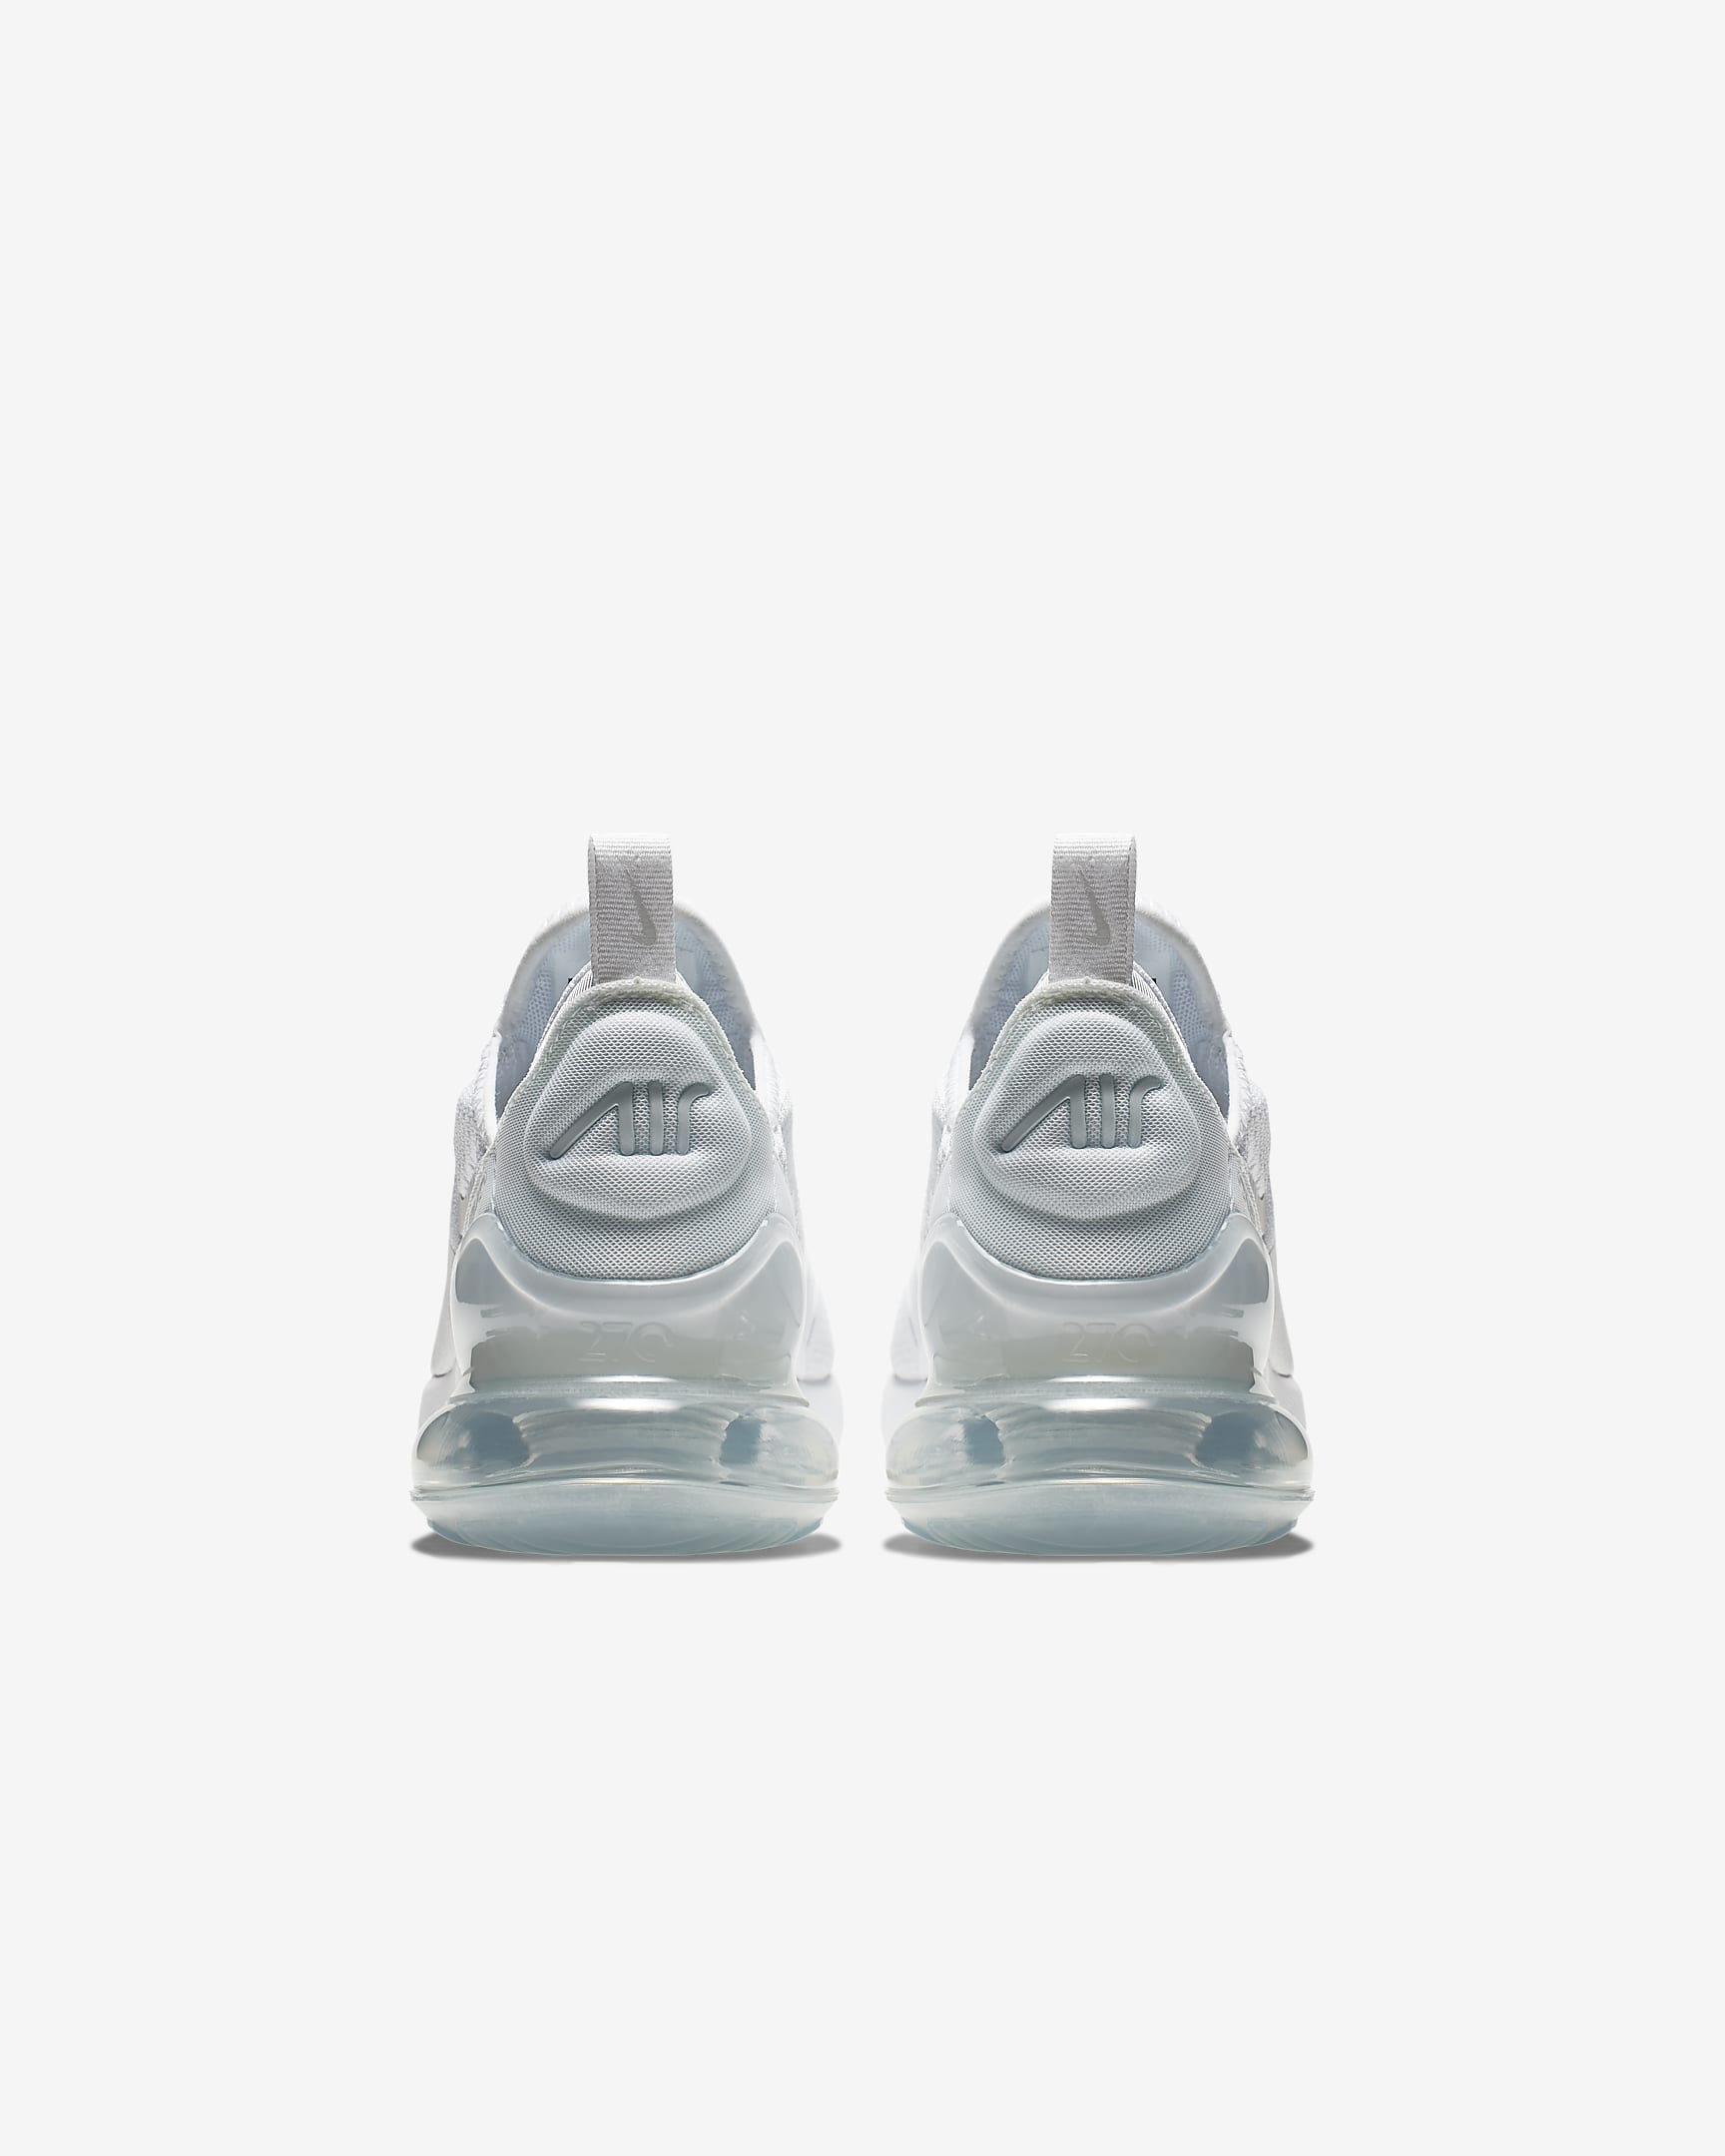 Nike Air Max 270 Schuh für ältere Kinder - Weiß/Metallic Silver/Weiß